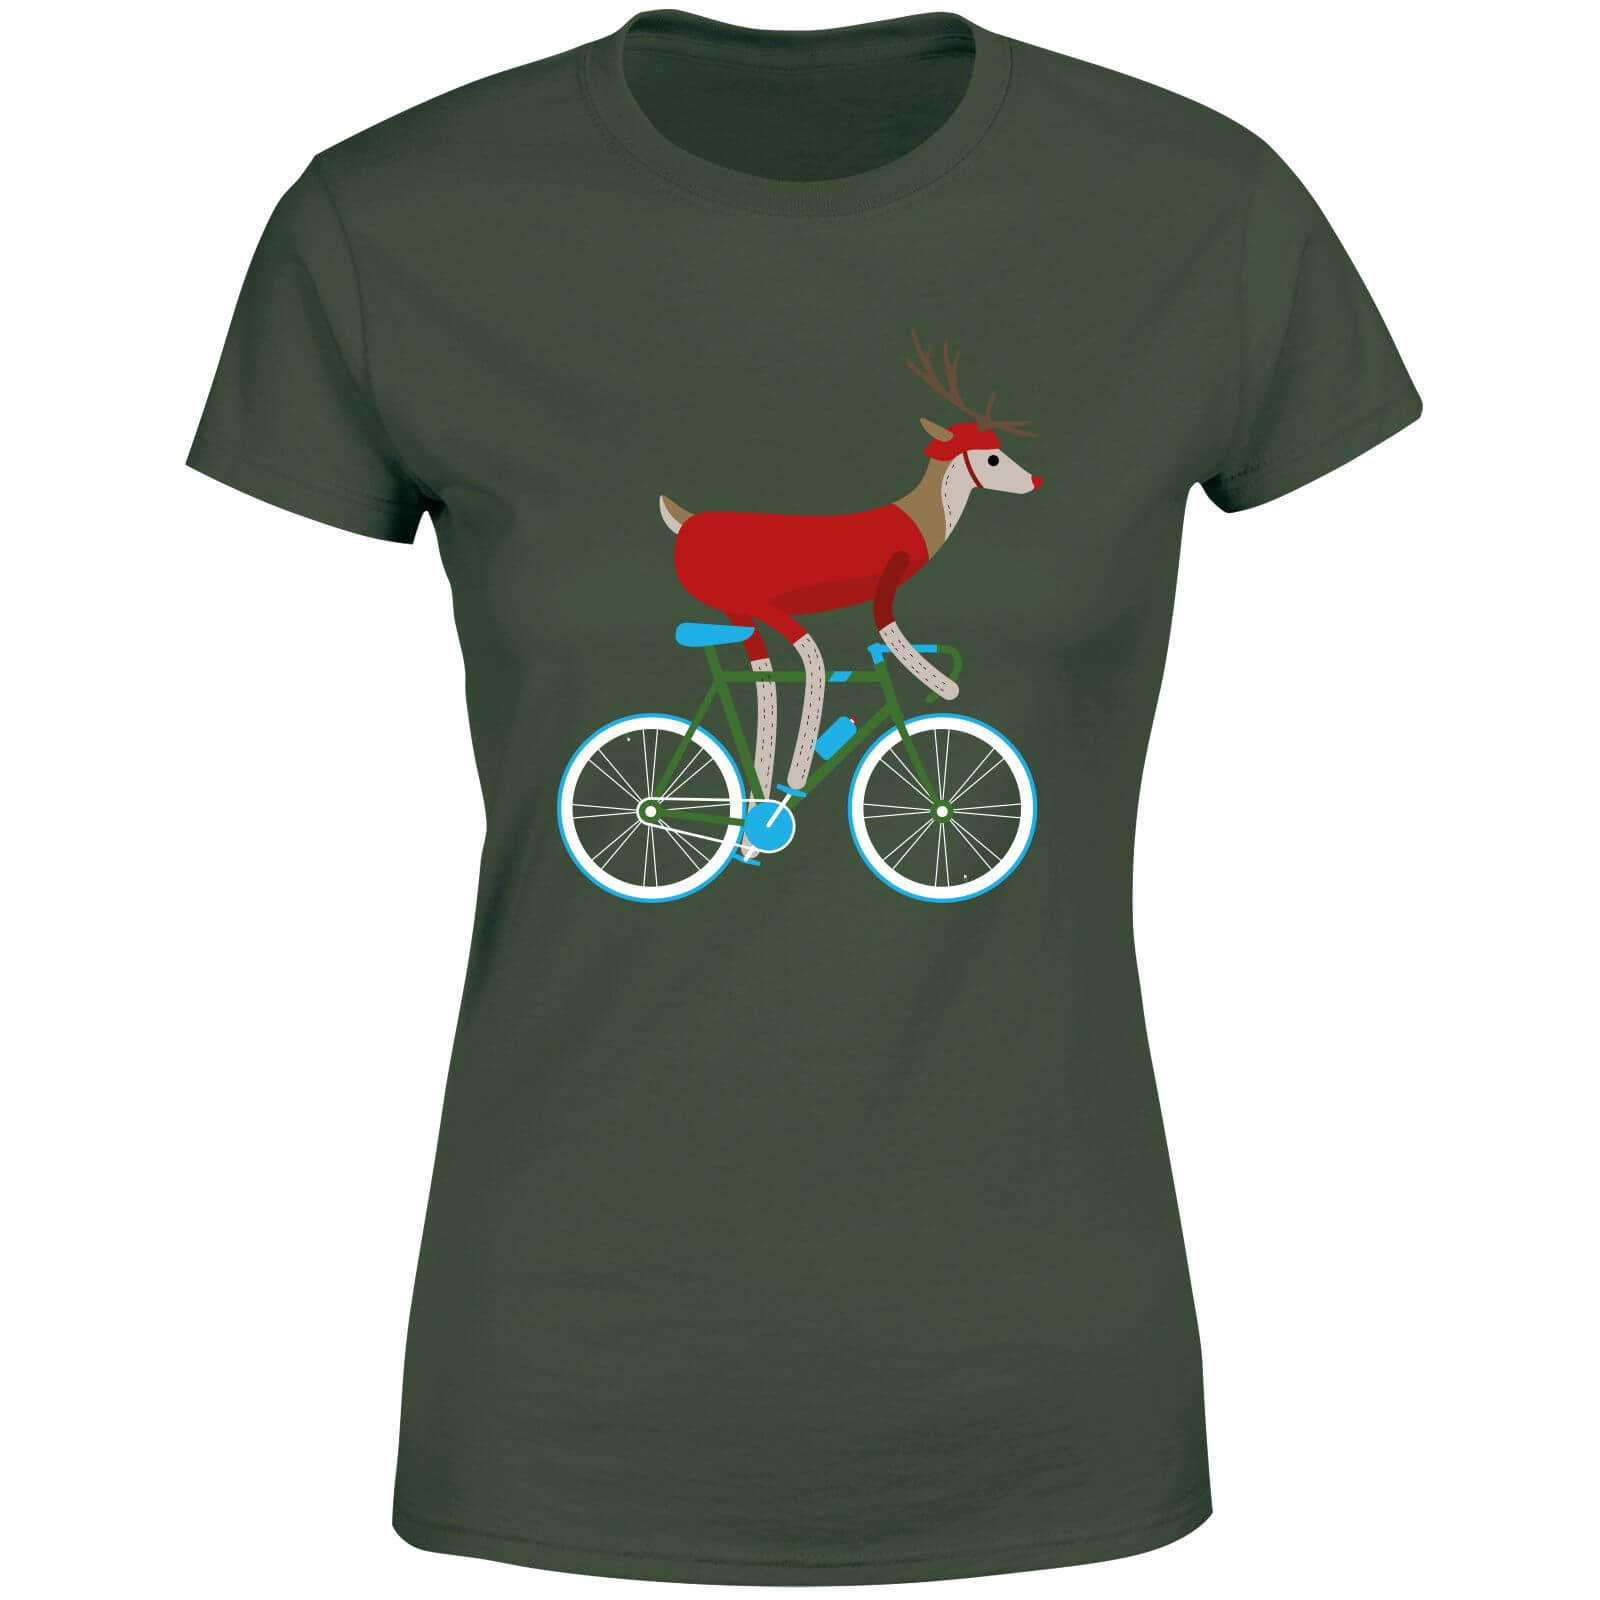 Biking Reindeer Women's Christmas T-Shirt - Forest Green - XL - Forest Green